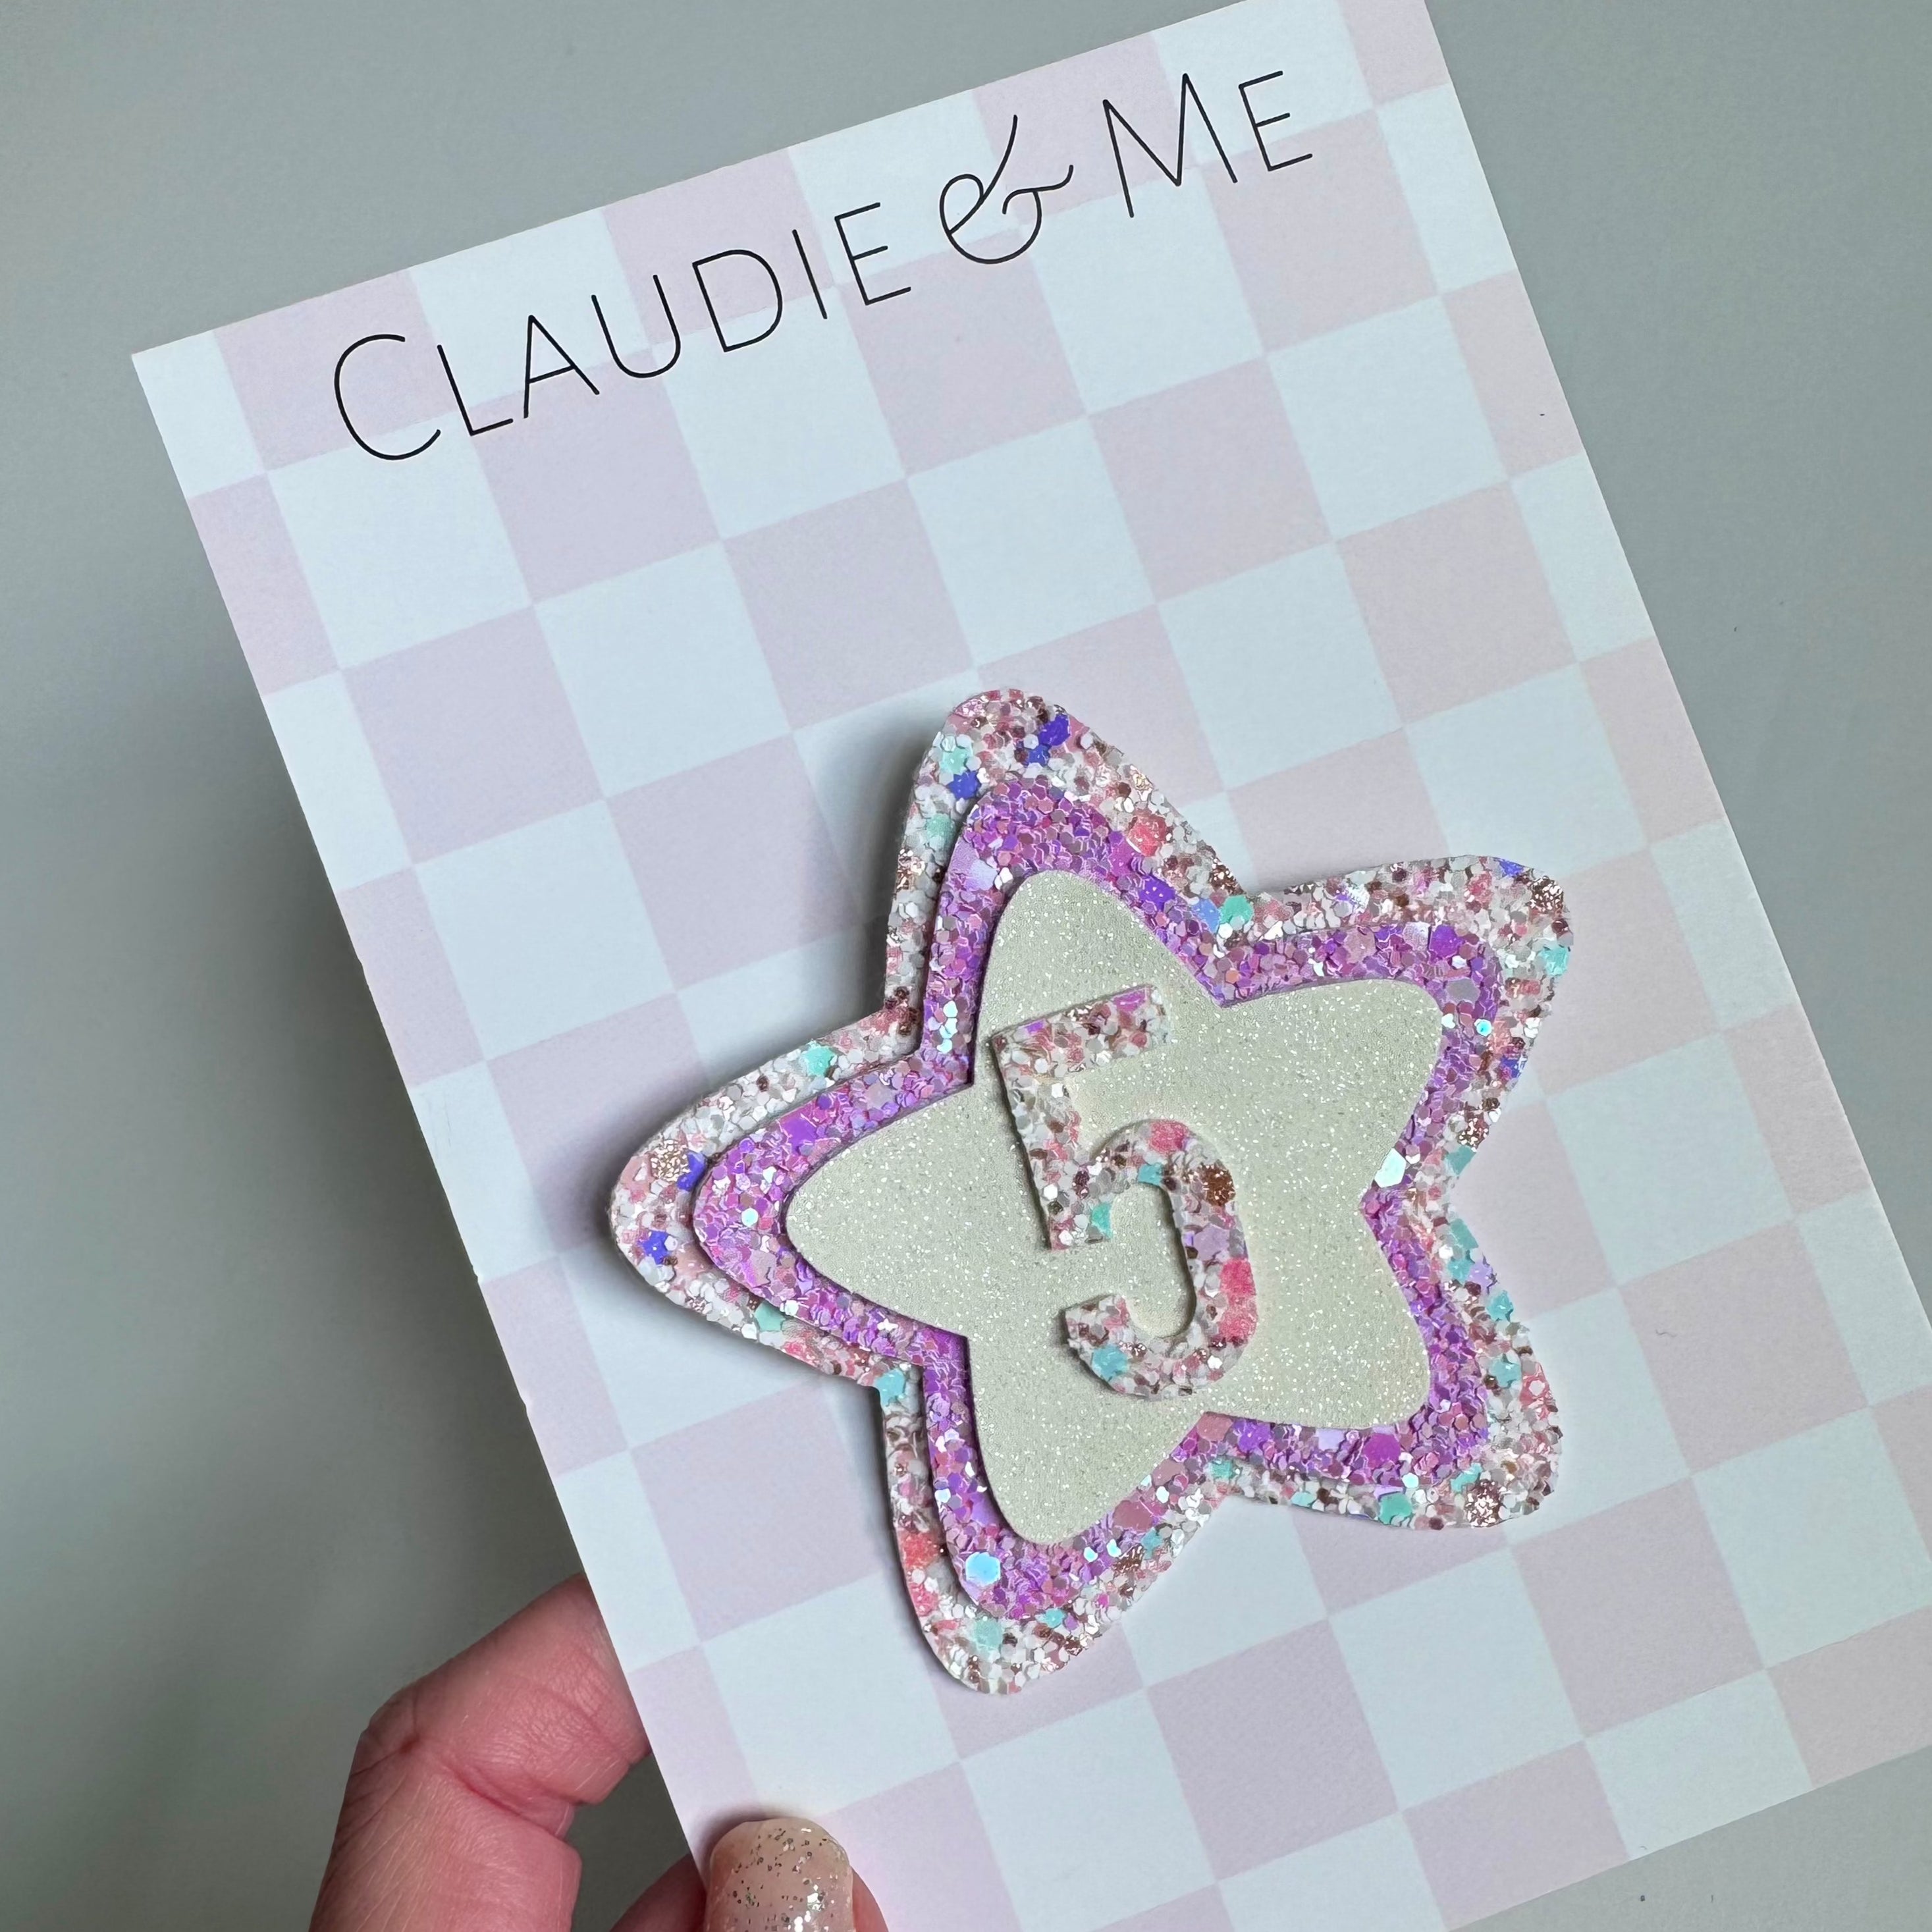 Claudie & Me Birthday badges